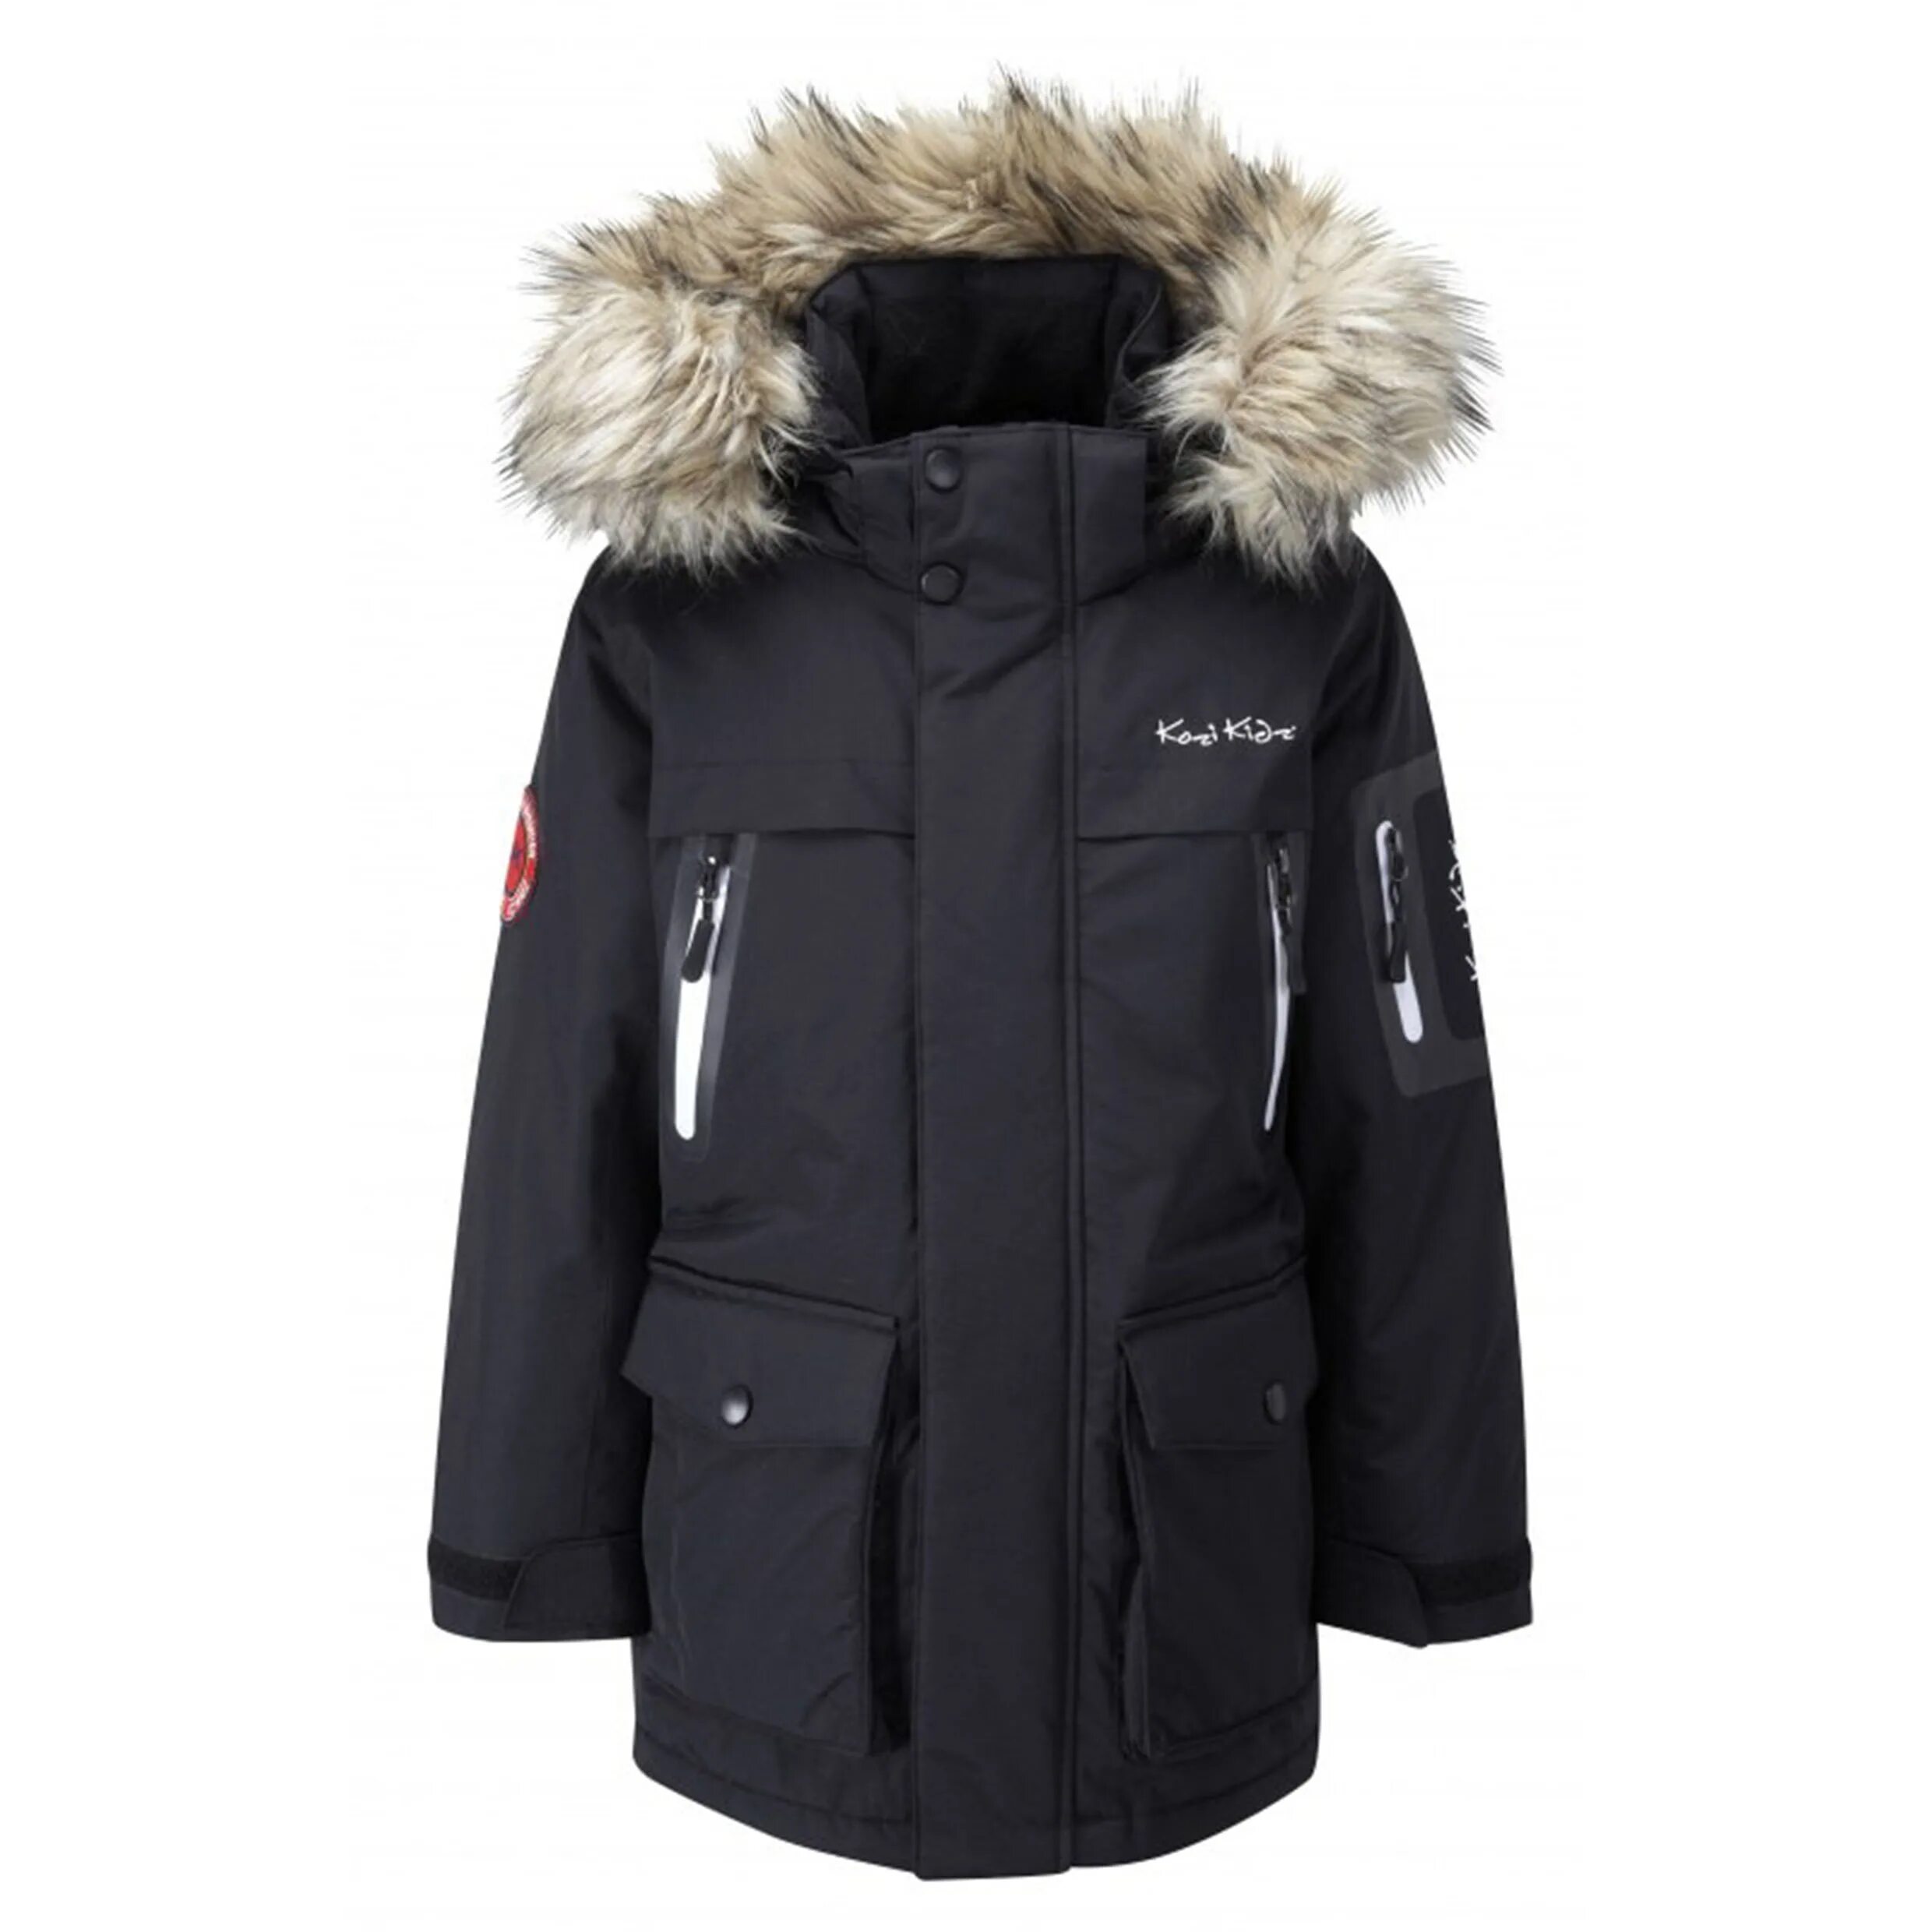 Аляски черные. Куртка финская kozi Kidz. Куртки Аляска детские зимние. Аляска куртка для мальчика зимняя. Аляска для детей зимняя куртка.